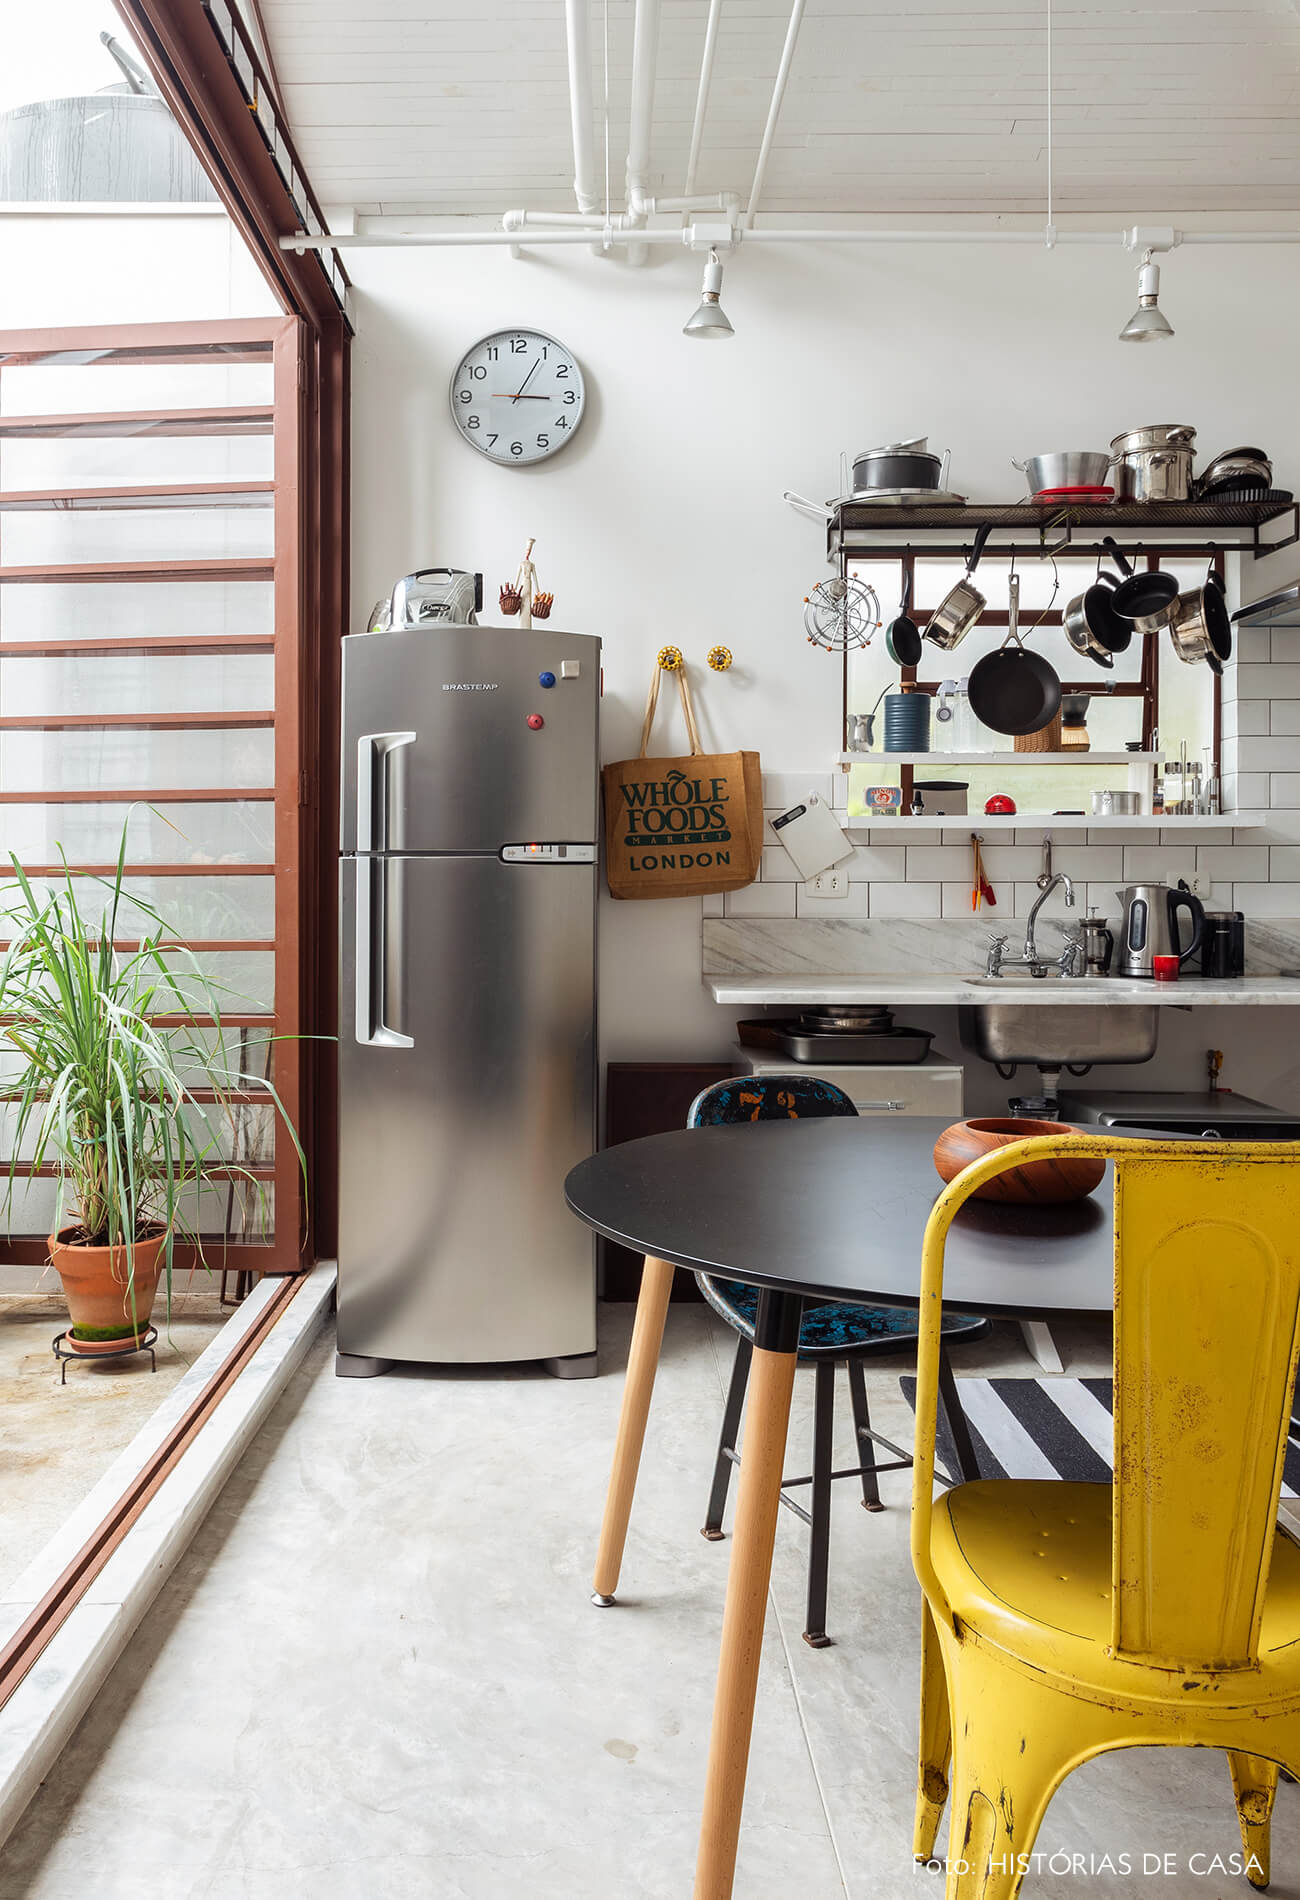 Casa com cozinha integrada e prateleiras abertas